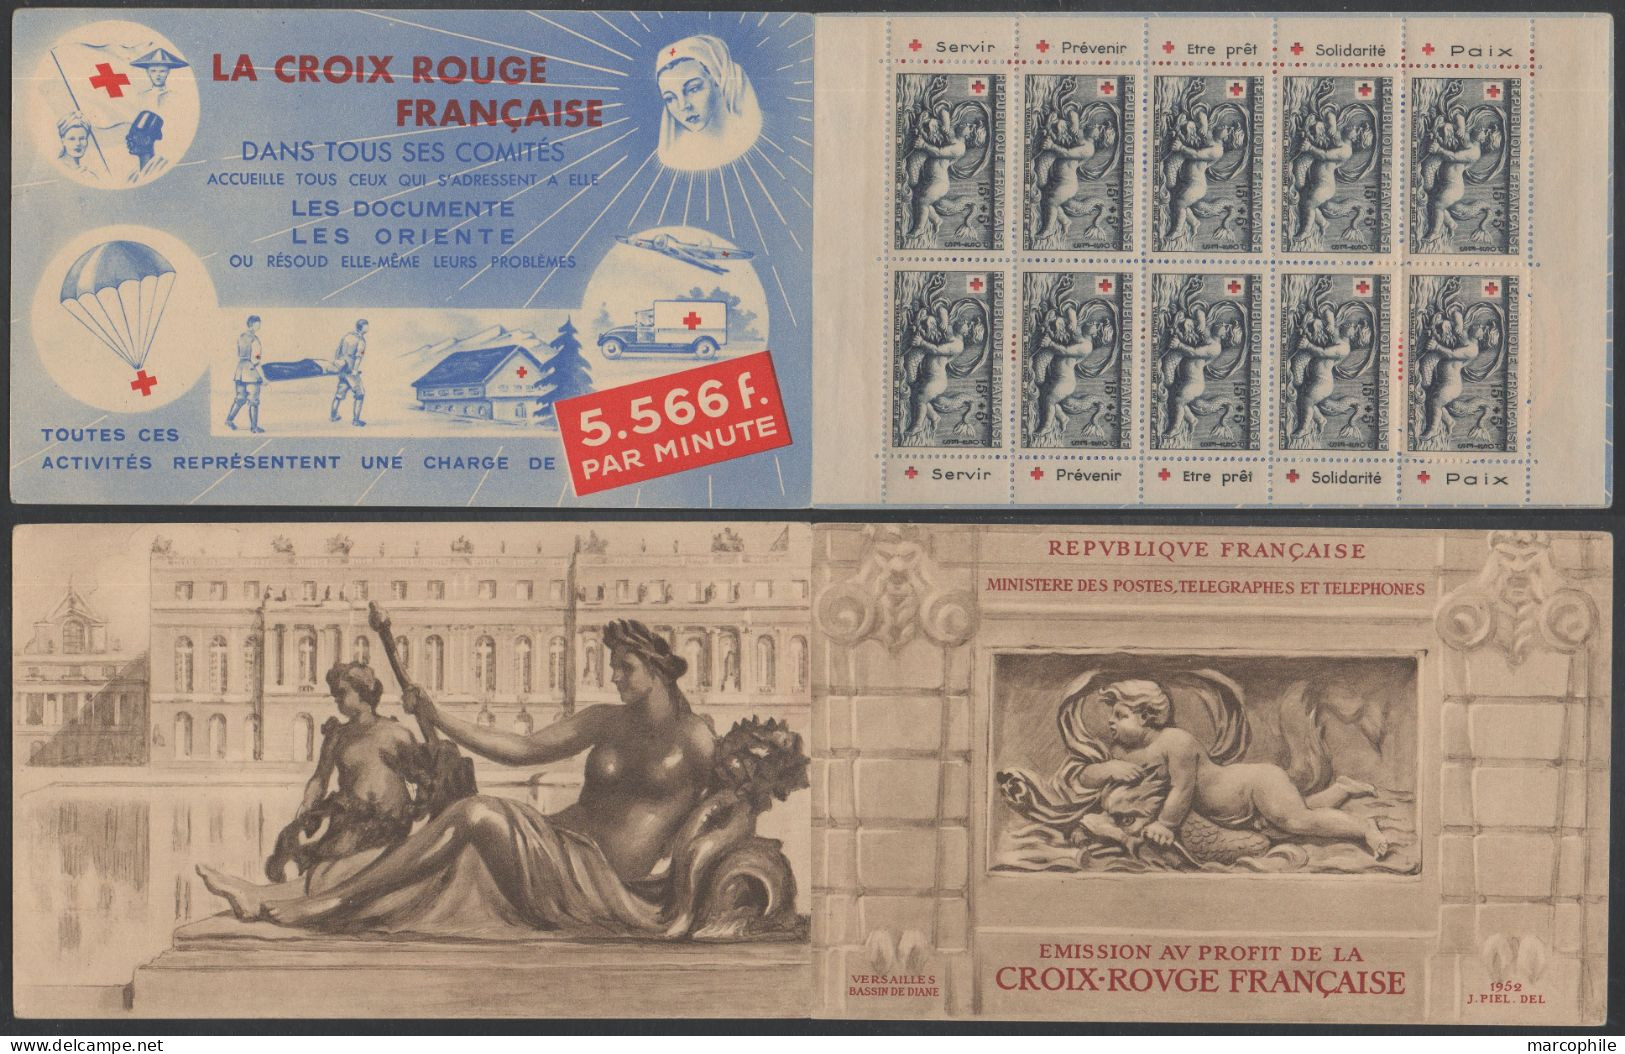 CARNET CROIX ROUGE 1952 / NEUF SANS CHARNIERE **  / COTE 550.00 € (ref 8063) - Croix Rouge